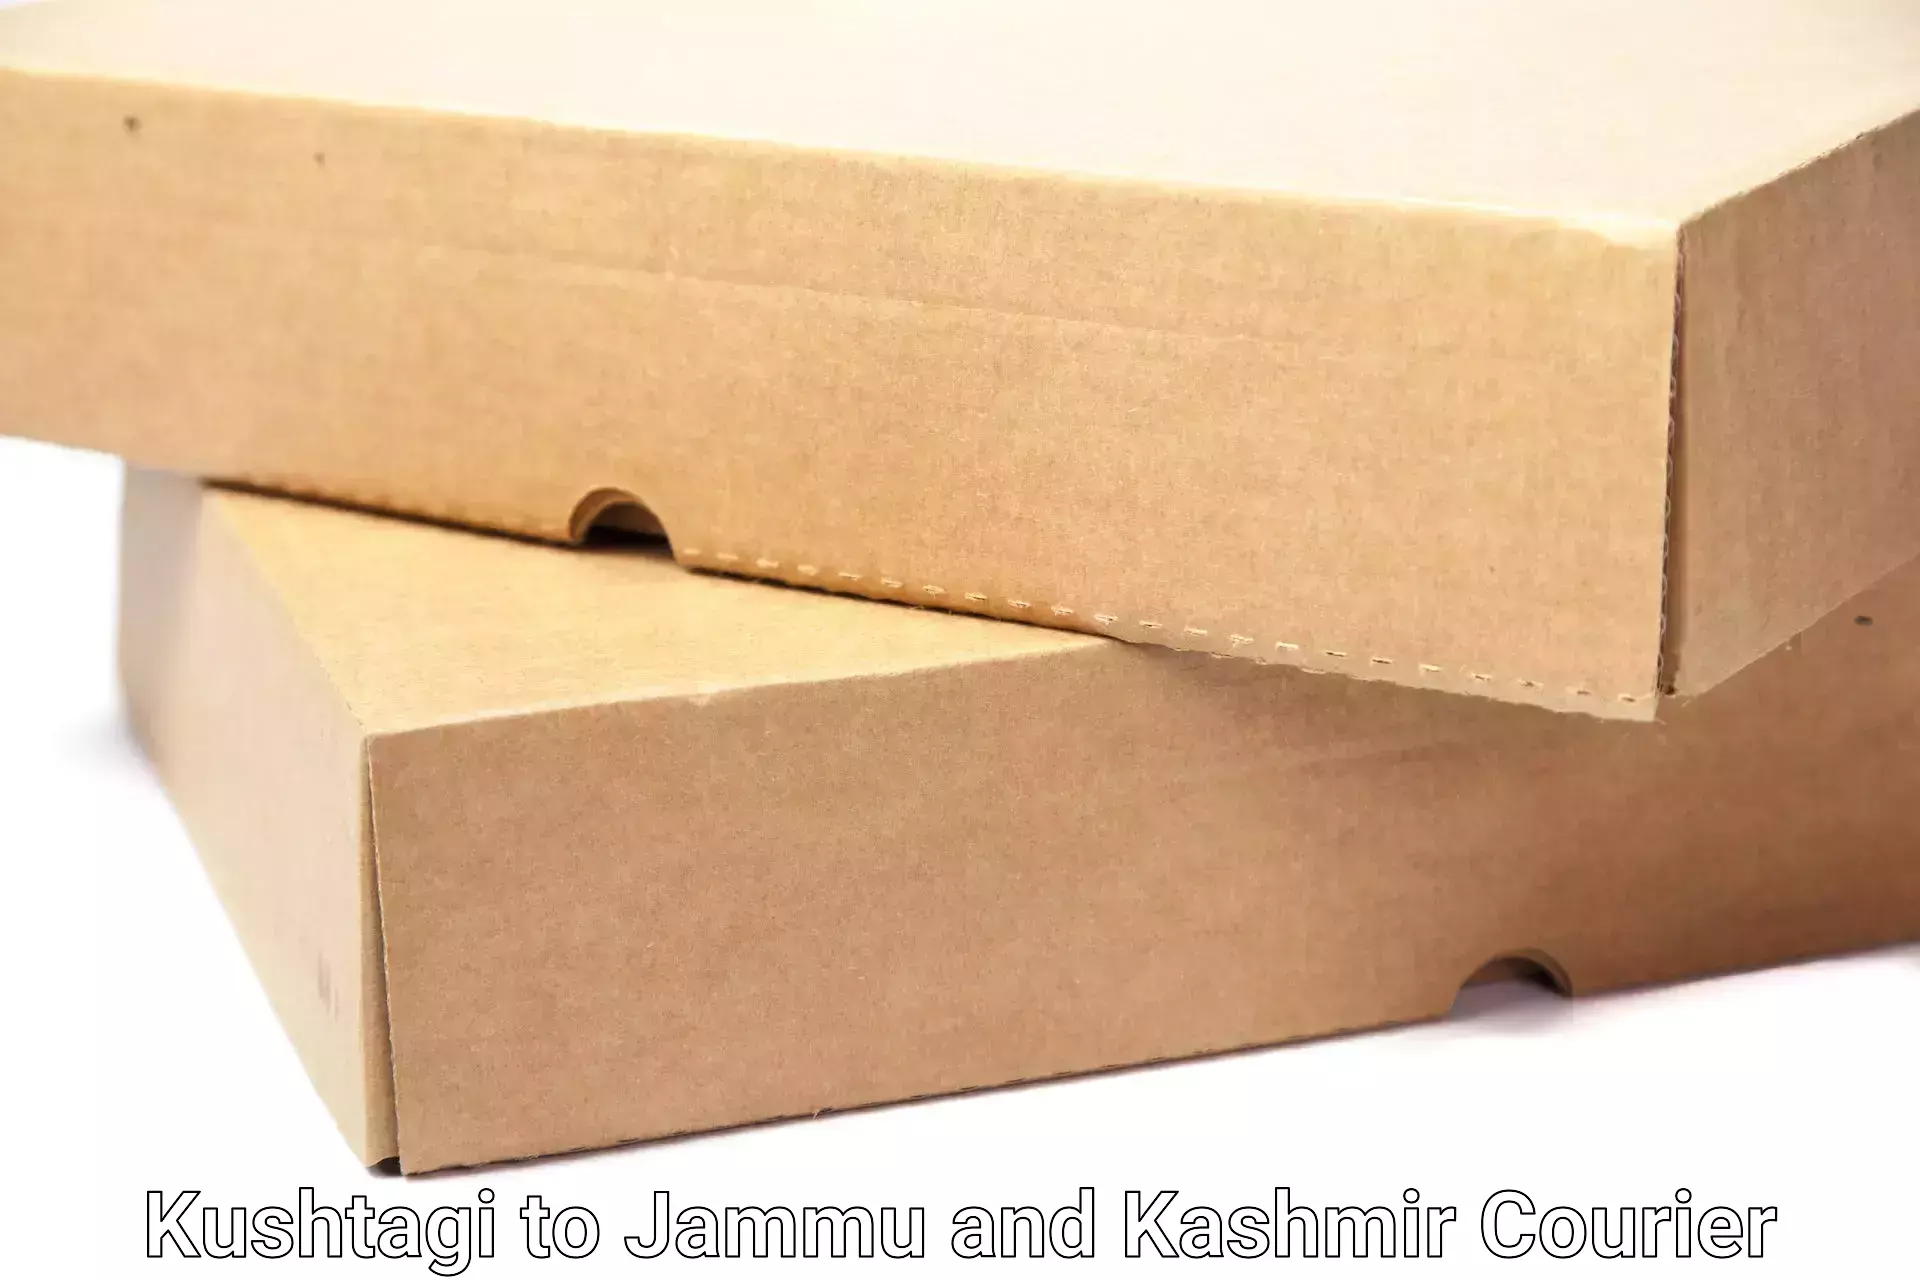 Efficient moving and packing Kushtagi to Jammu